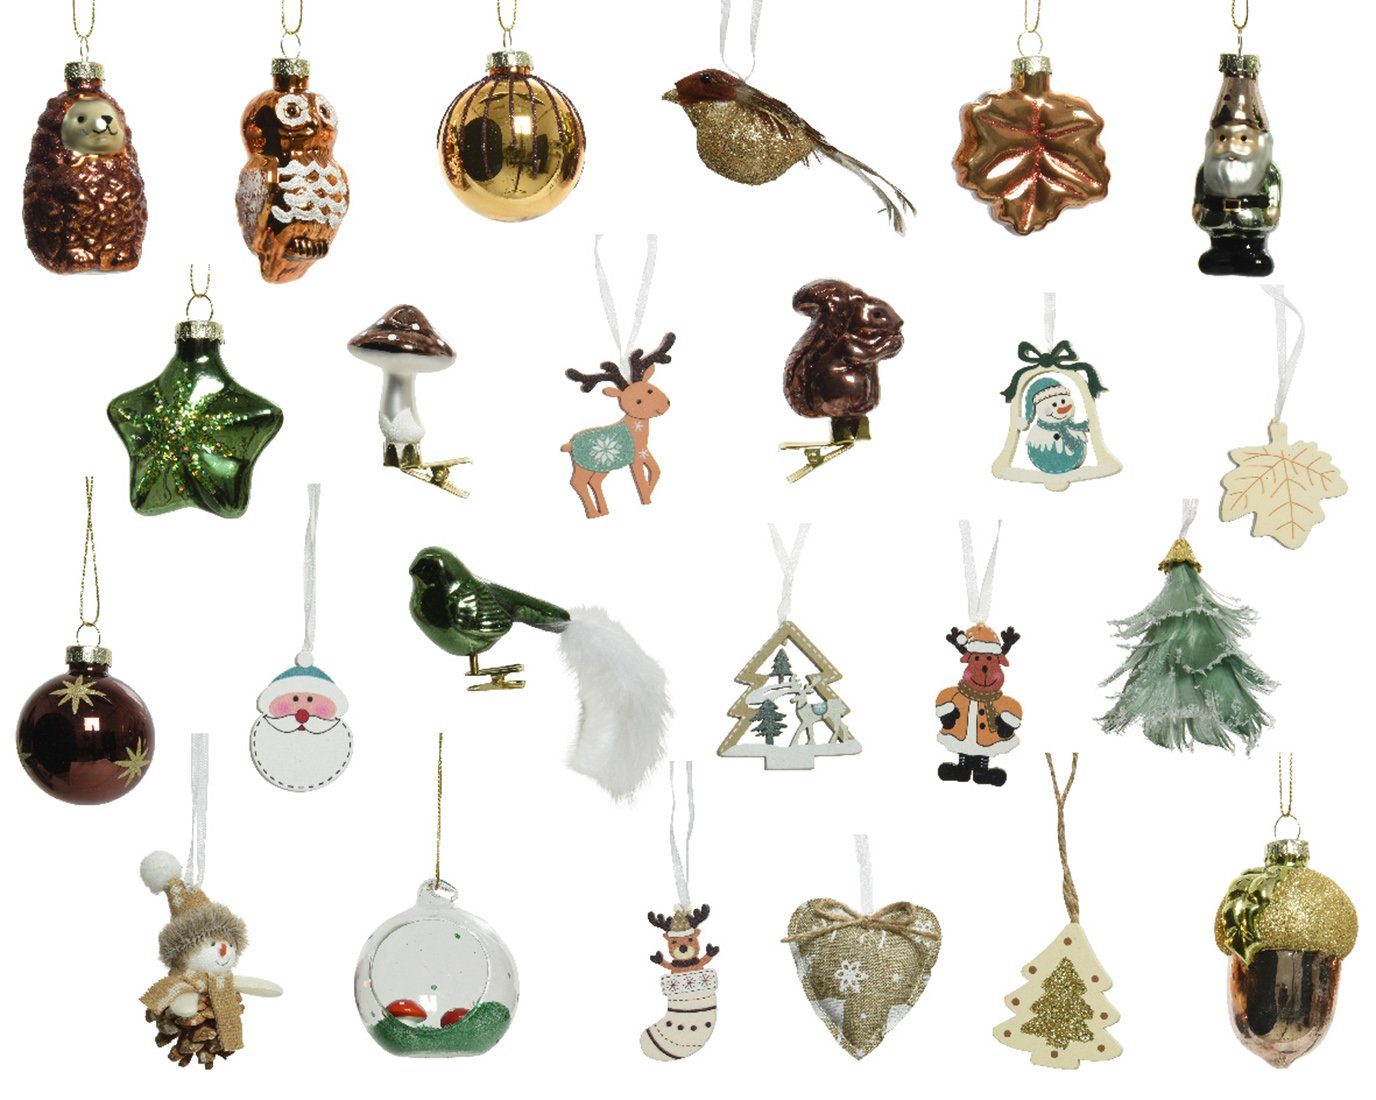 Decoris season decorations Adventskalender, Adventskalender Wald braun grün Tiere mit im Christbaumschmuck 